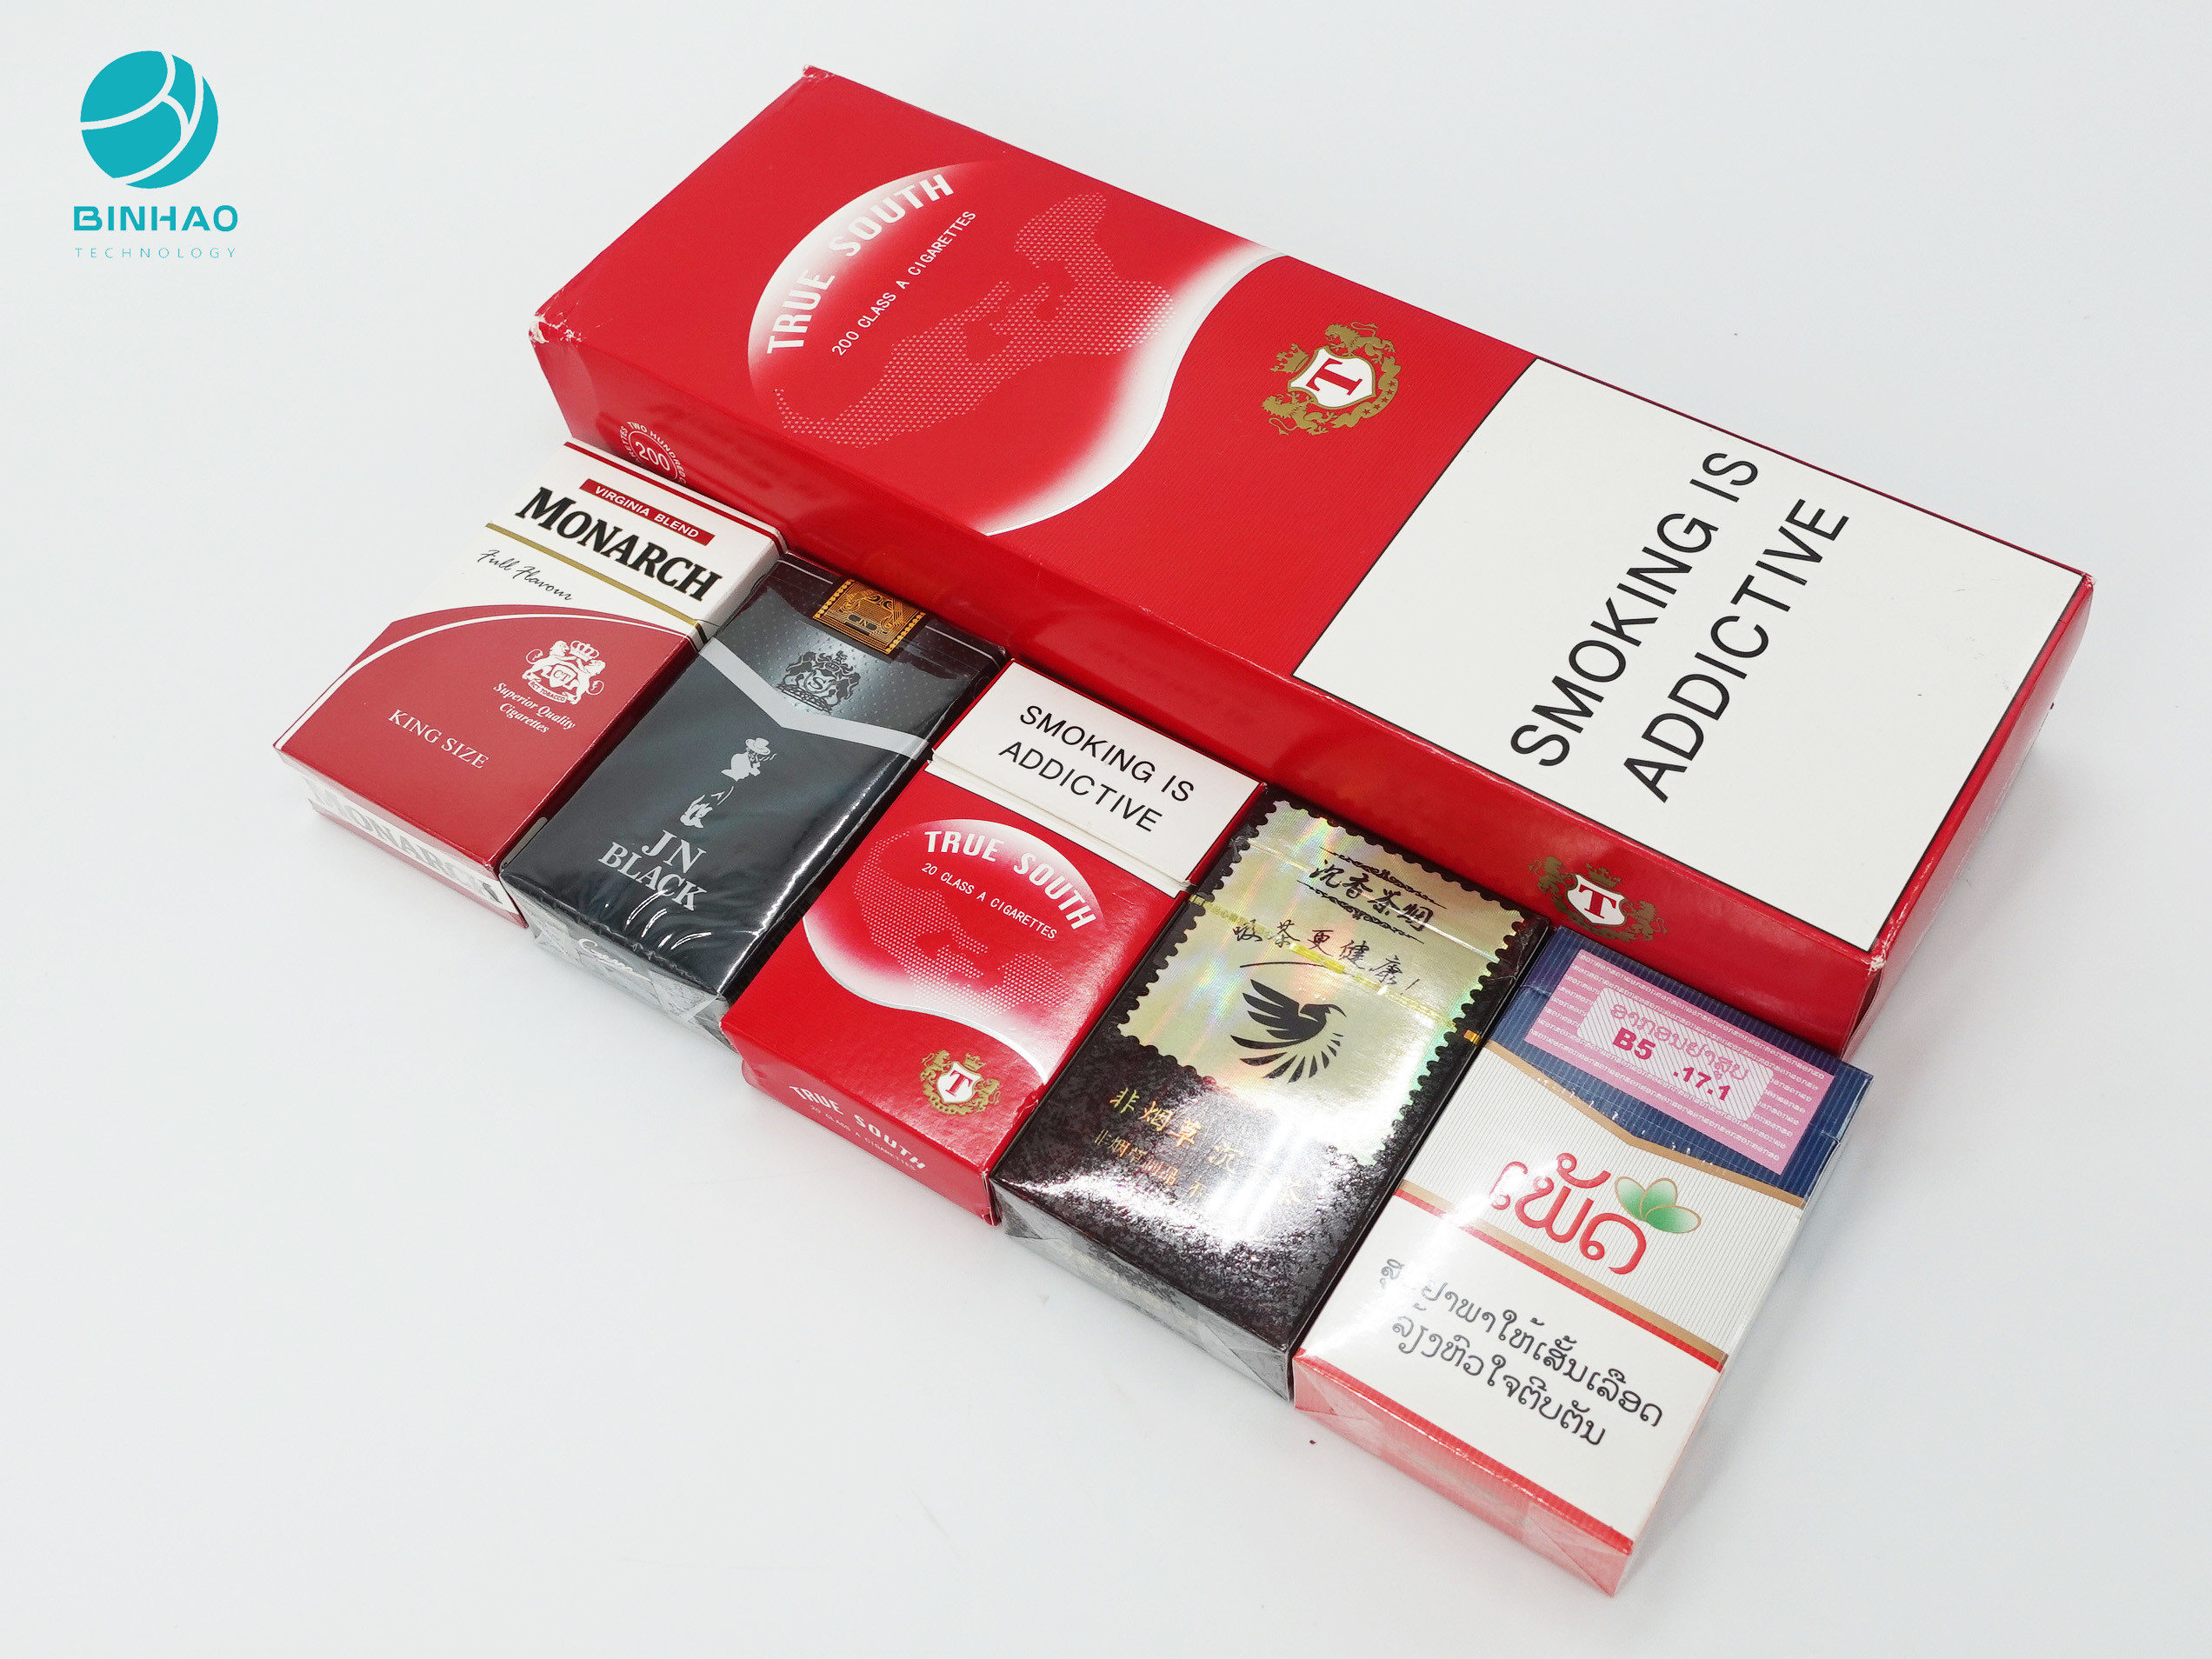 Αποτυπωμένες σε ανάγλυφο λογότυπων περιπτώσεις συσκευασίας χαρτονιού συνήθειας ανθεκτικές για τον καπνό τσιγάρων